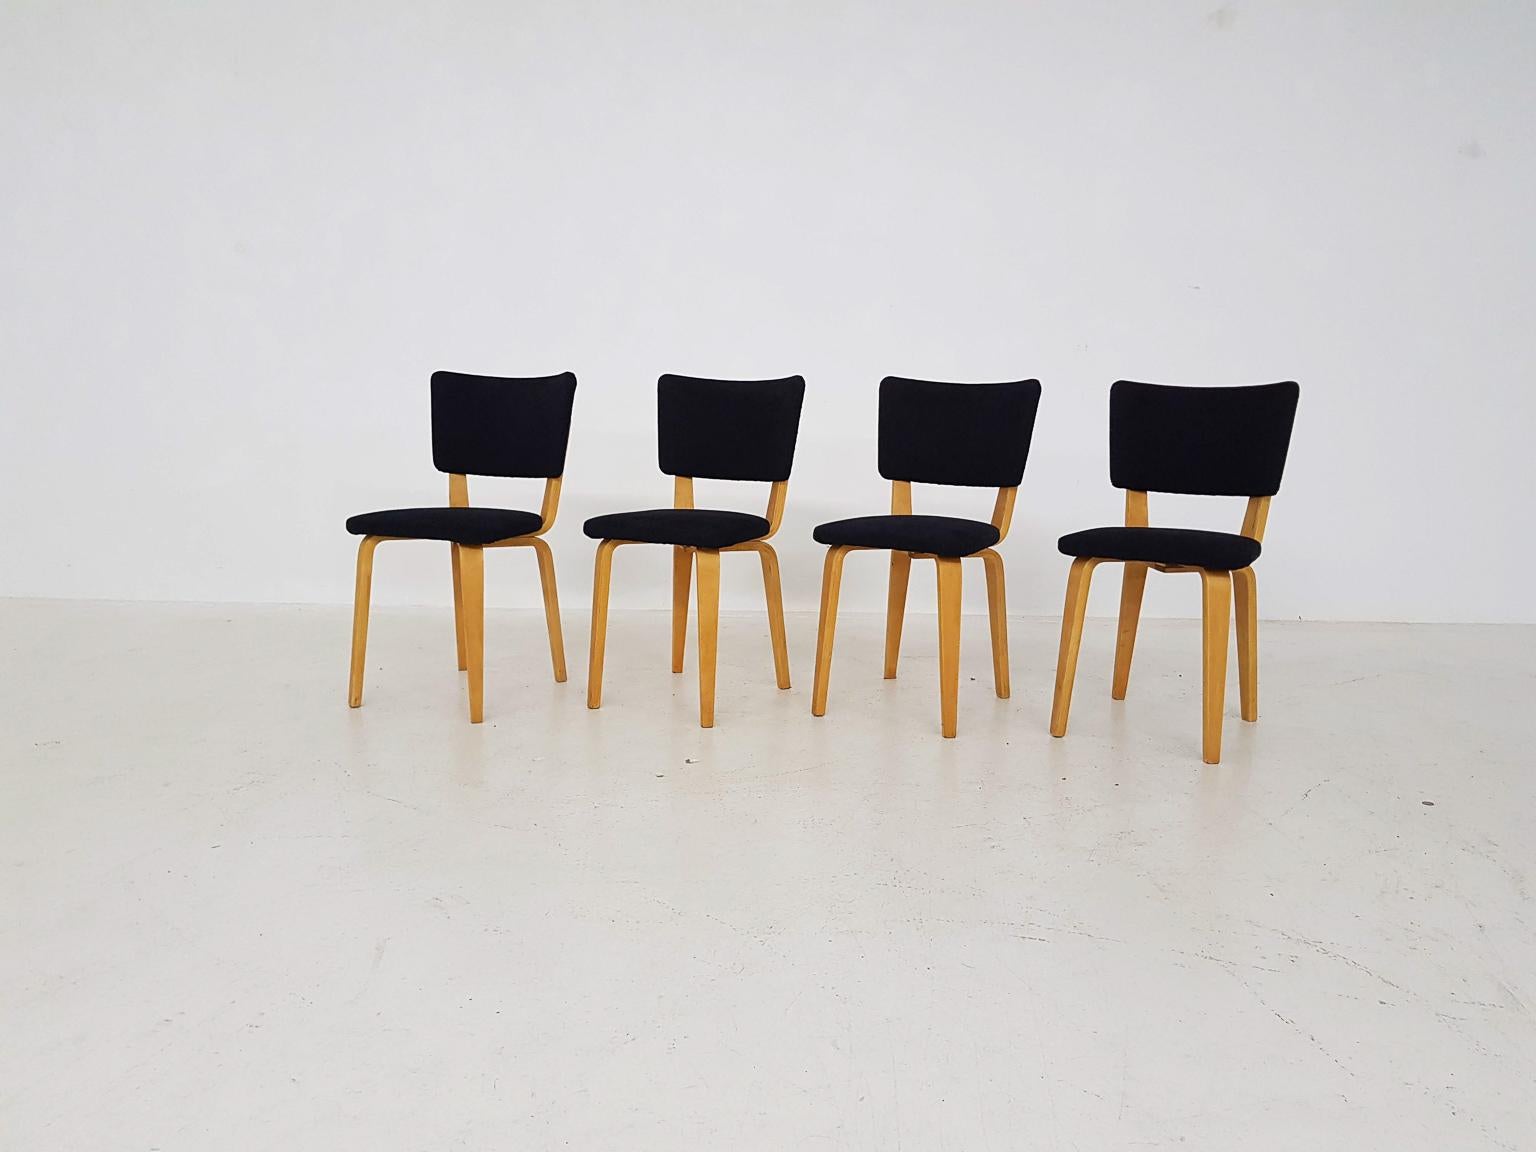 Chaises de salle à manger du designer néerlandais du milieu du siècle Cor Alons pour Gouda Den Boer aux Pays-Bas, fabriquées dans les années 1950.

De véritables classiques du design néerlandais et un bel exemple de l'évolution du mobilier